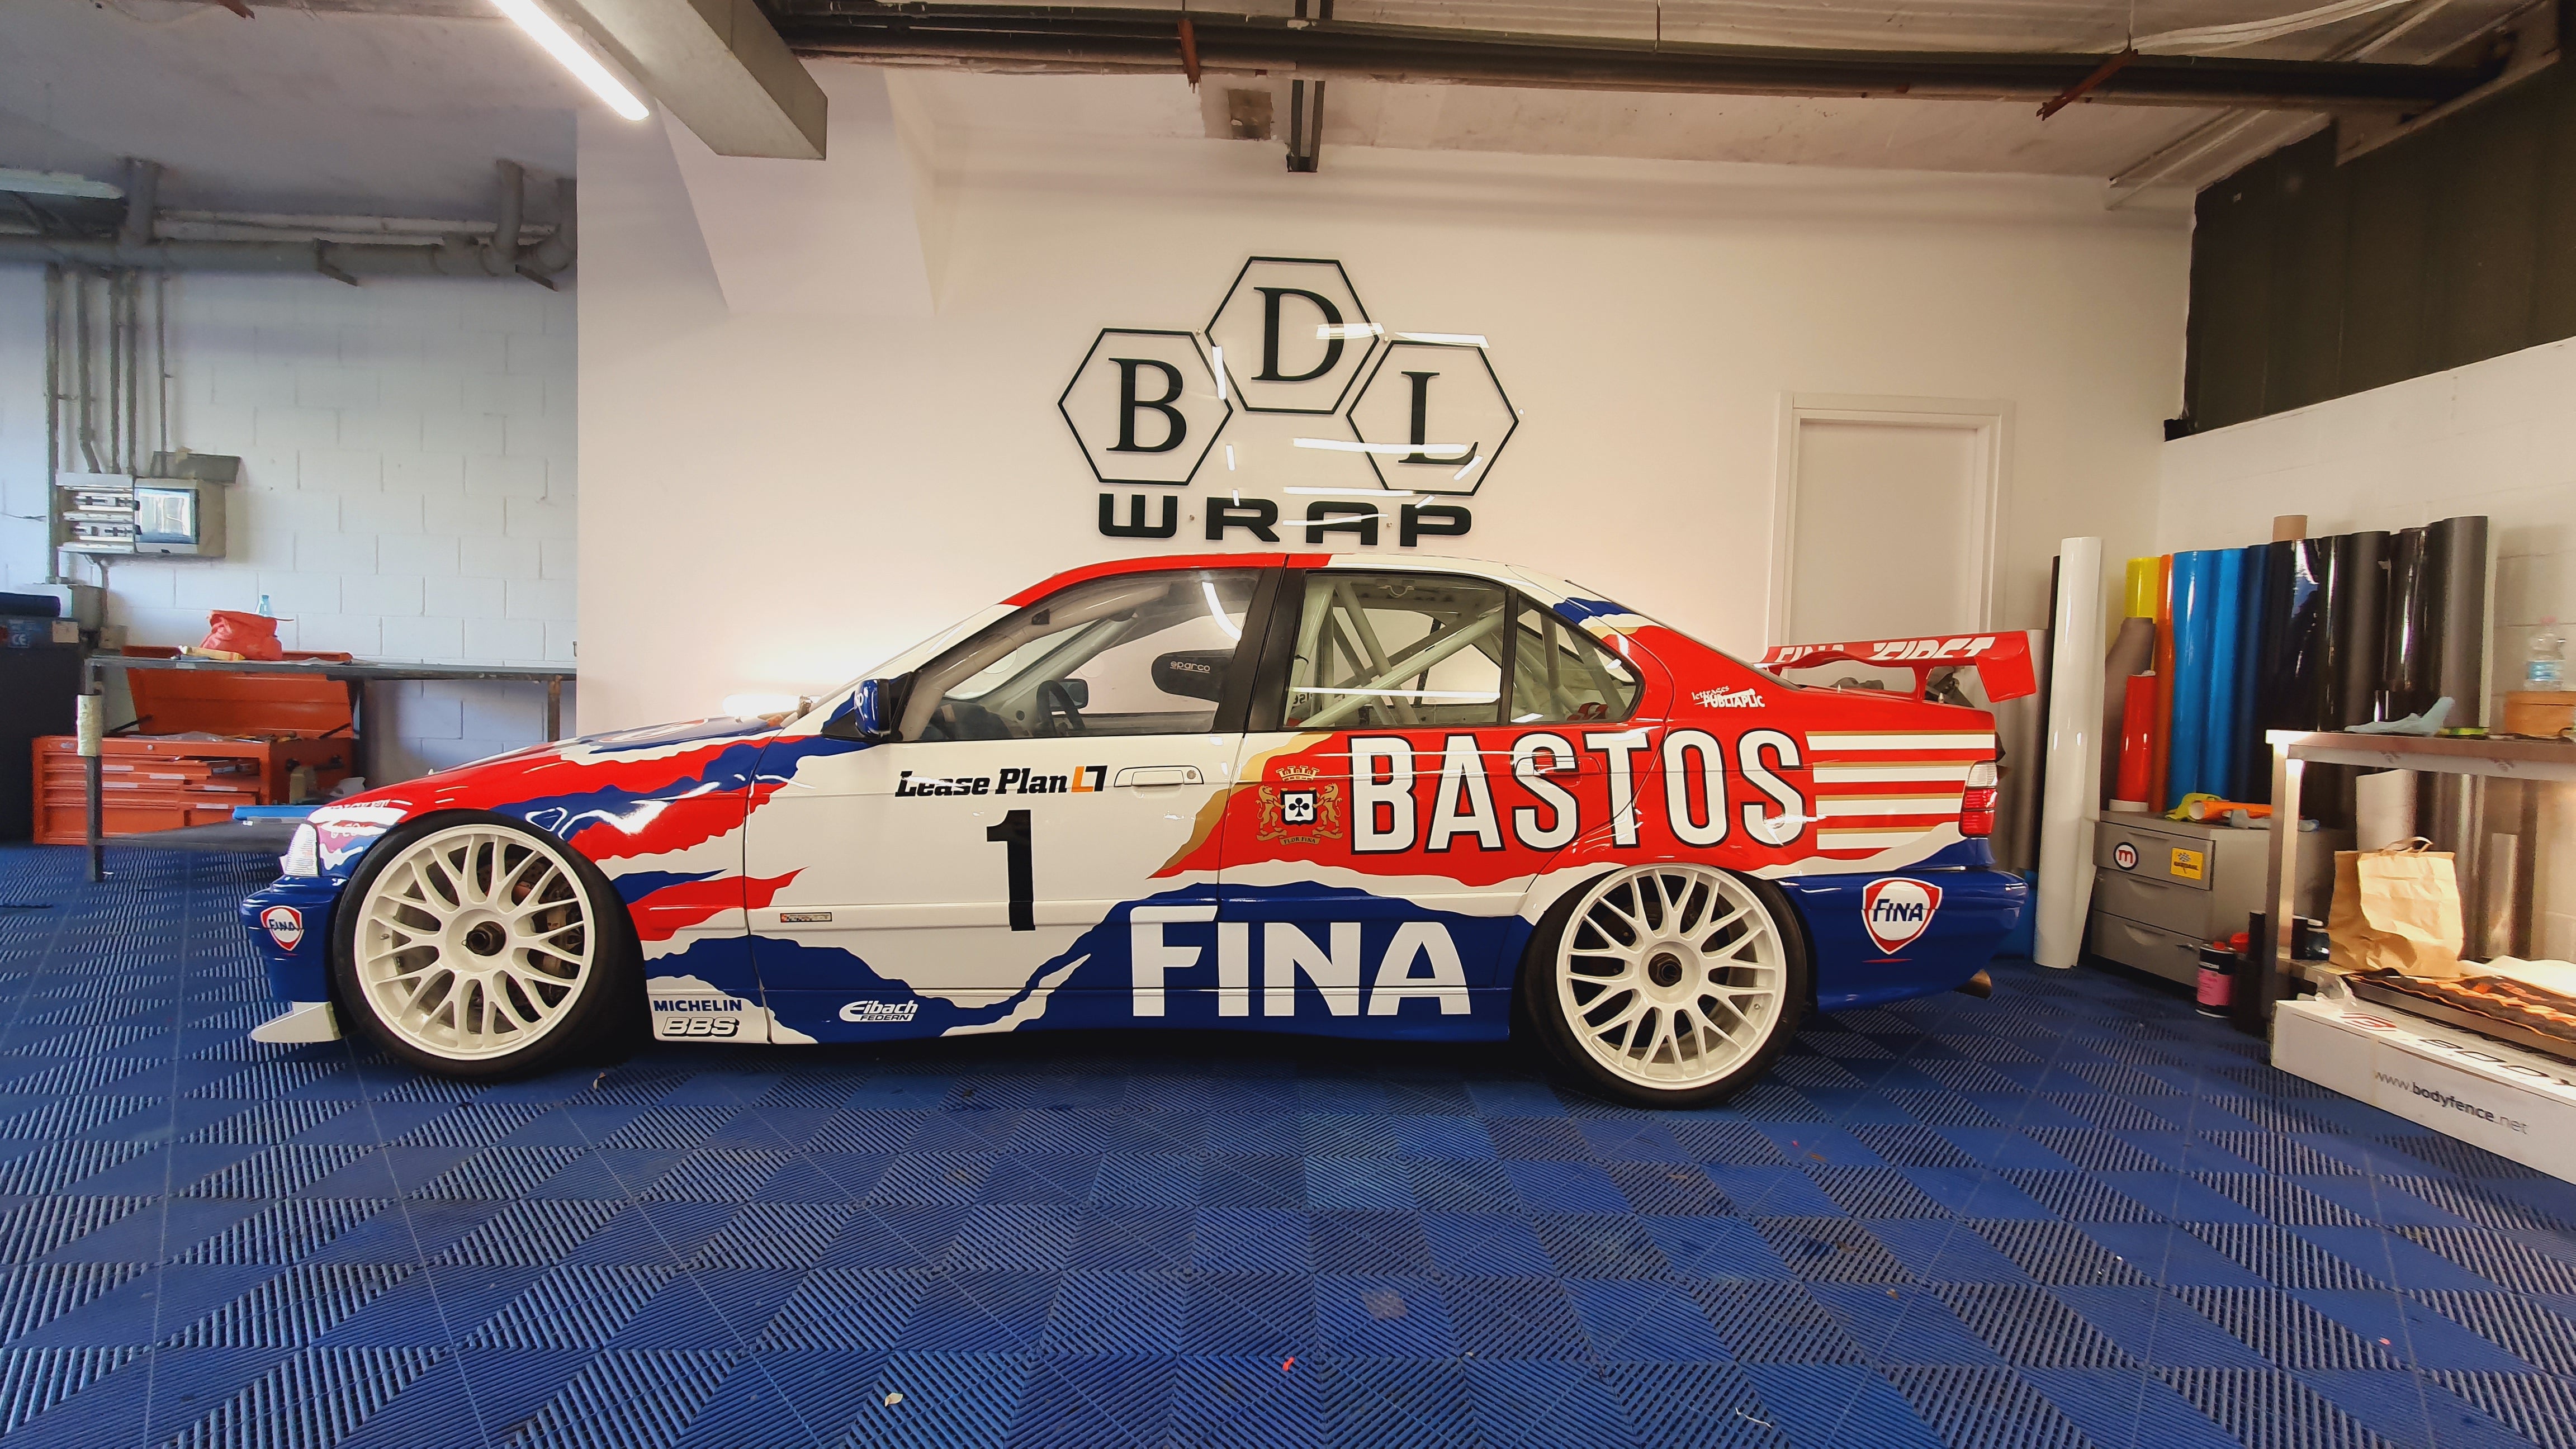 BMW 318is E36 BTCC Bastos Fina